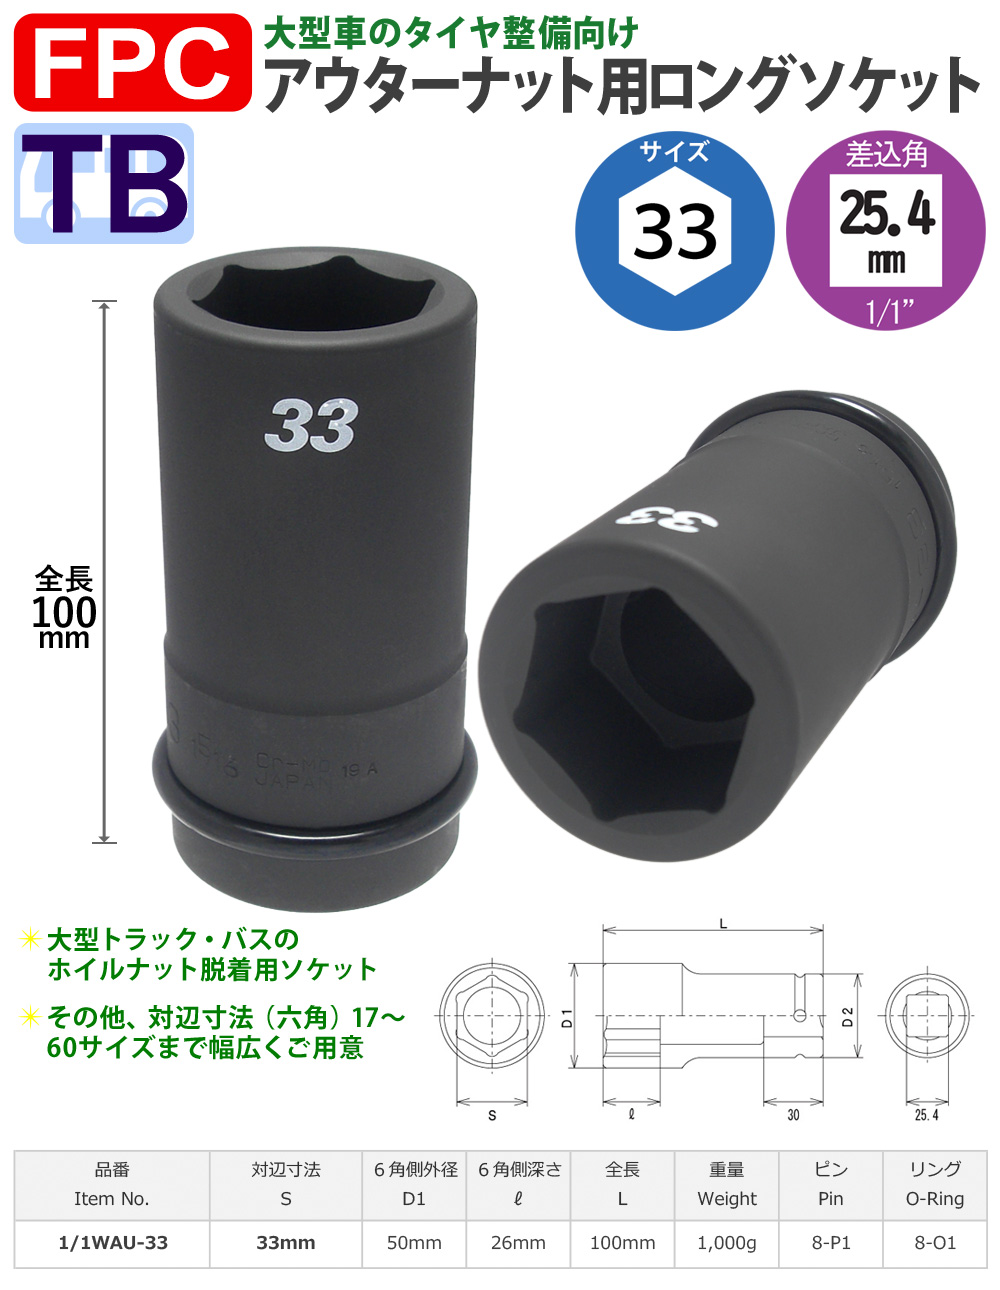 六角33mmサイズ 25.4角 ロングソケット 大型インパクト対応 FPC